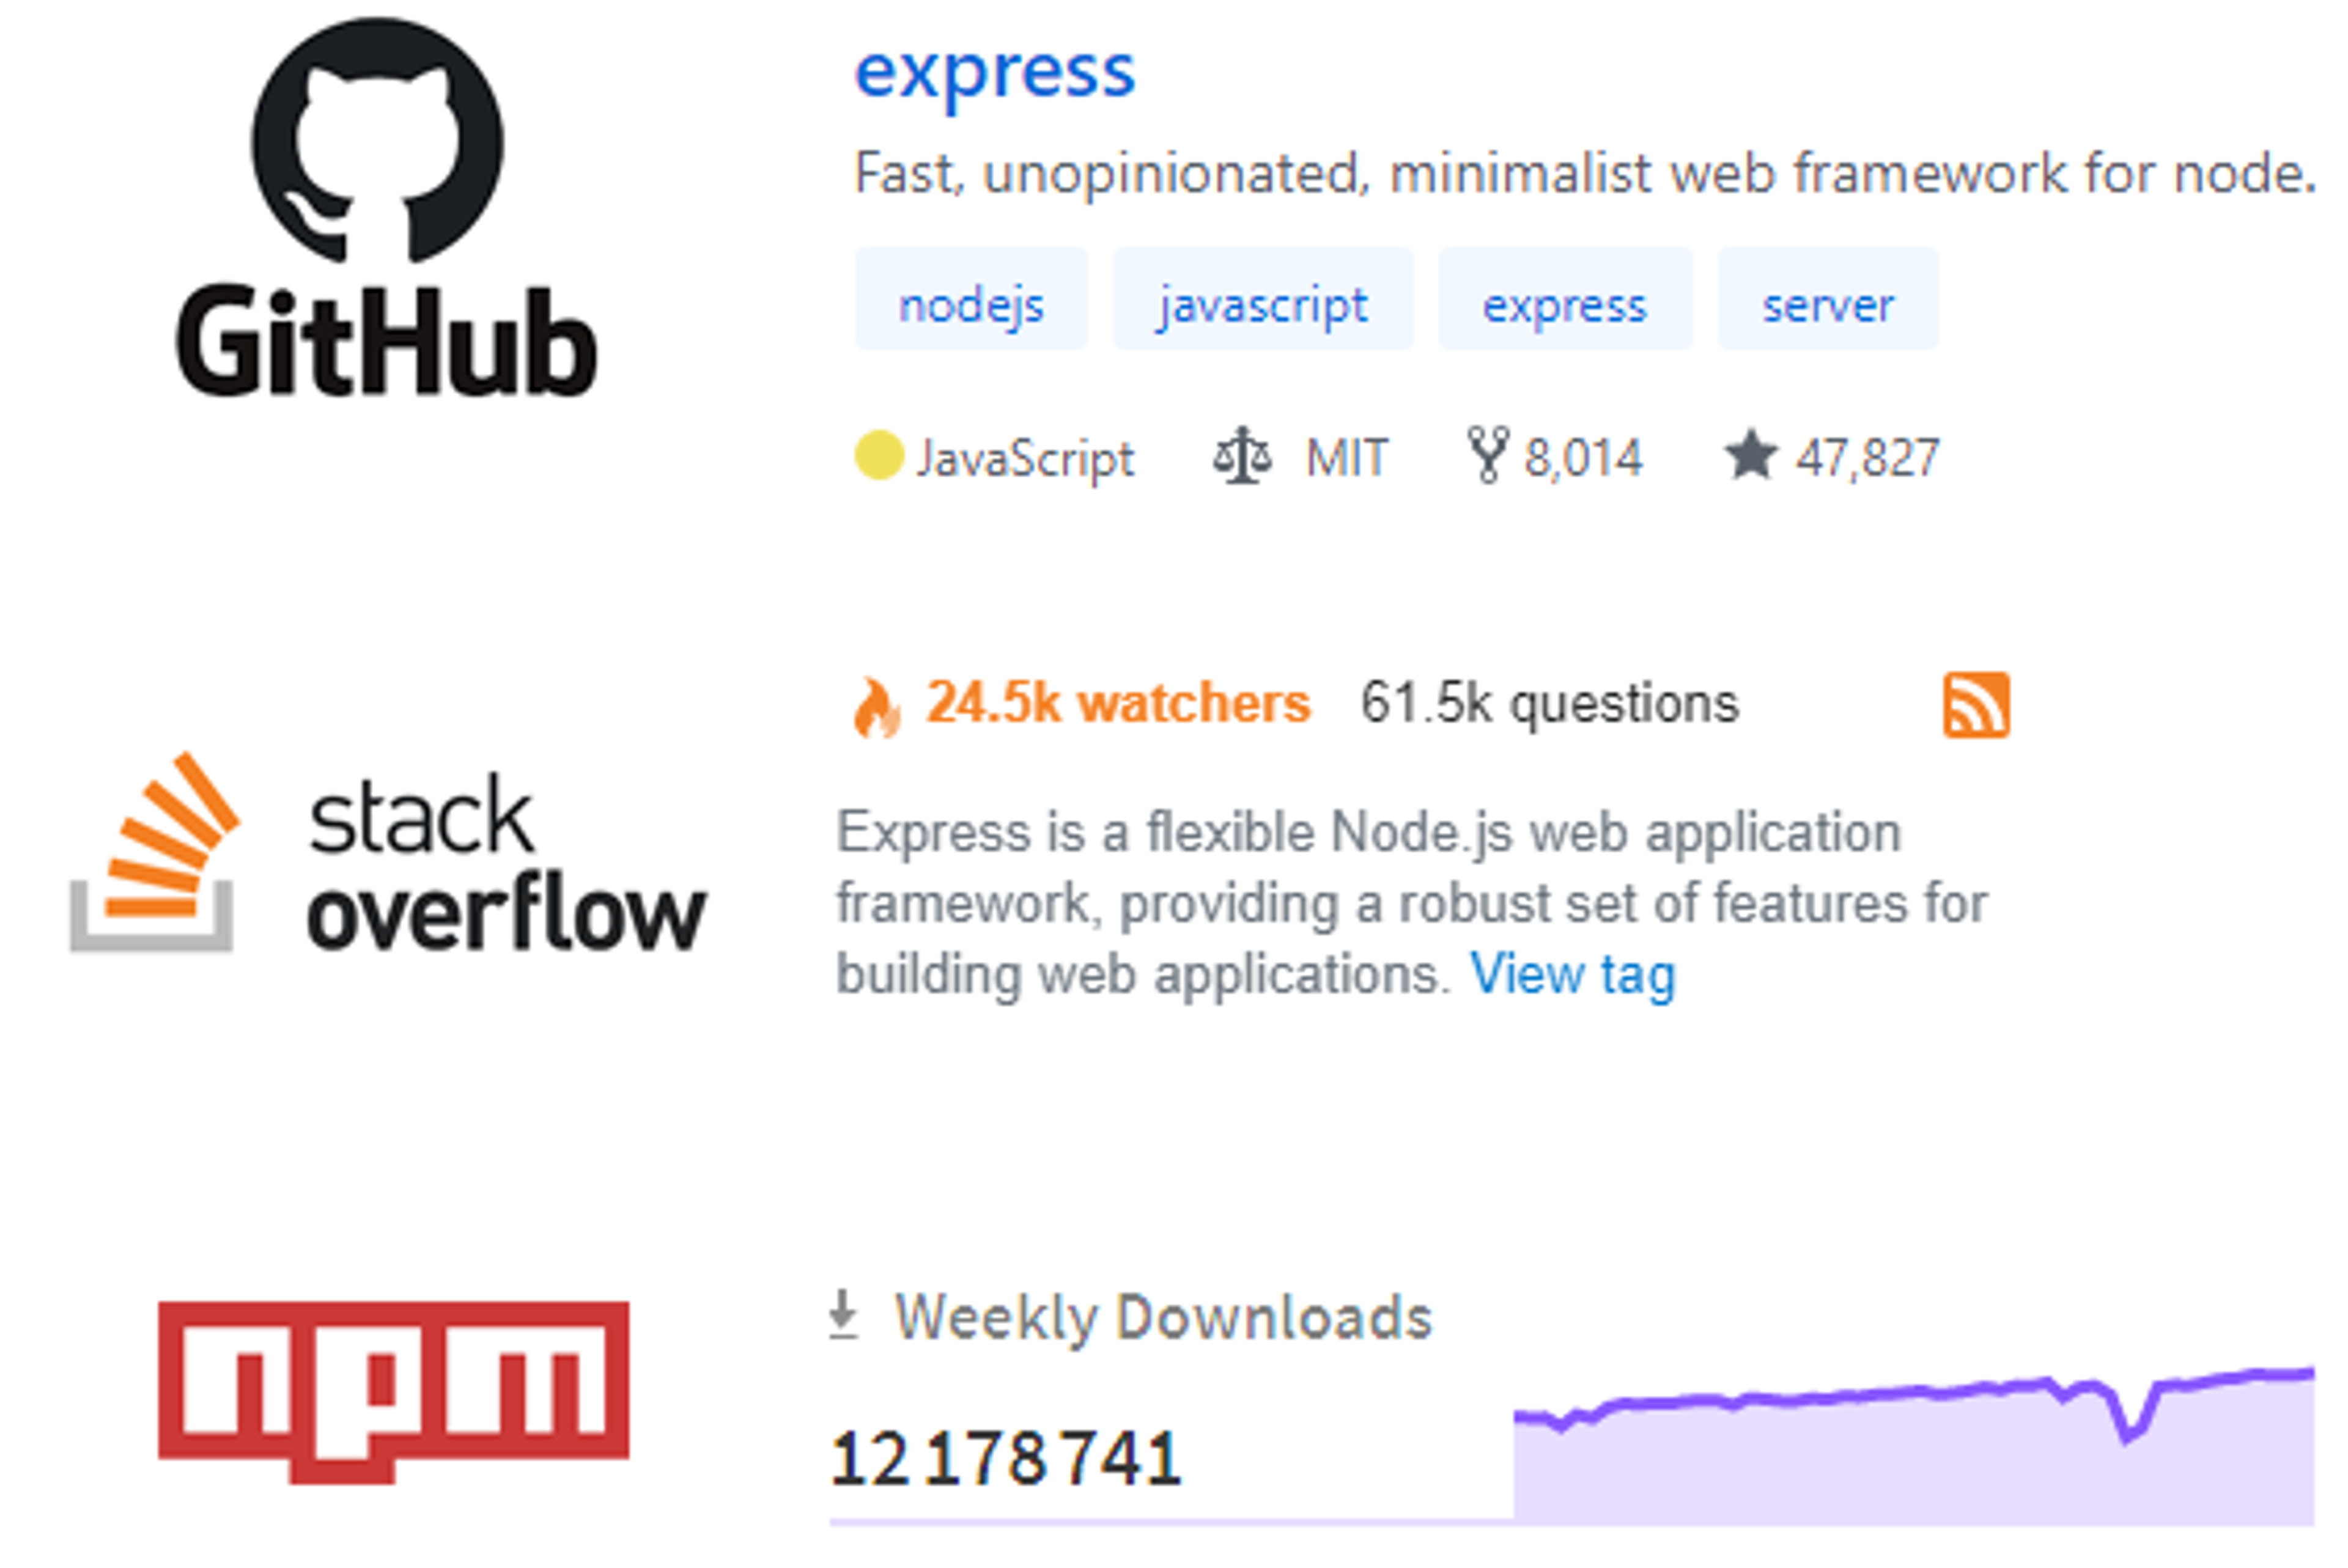 Popularité expressjs sur github, npm et stackoverflow